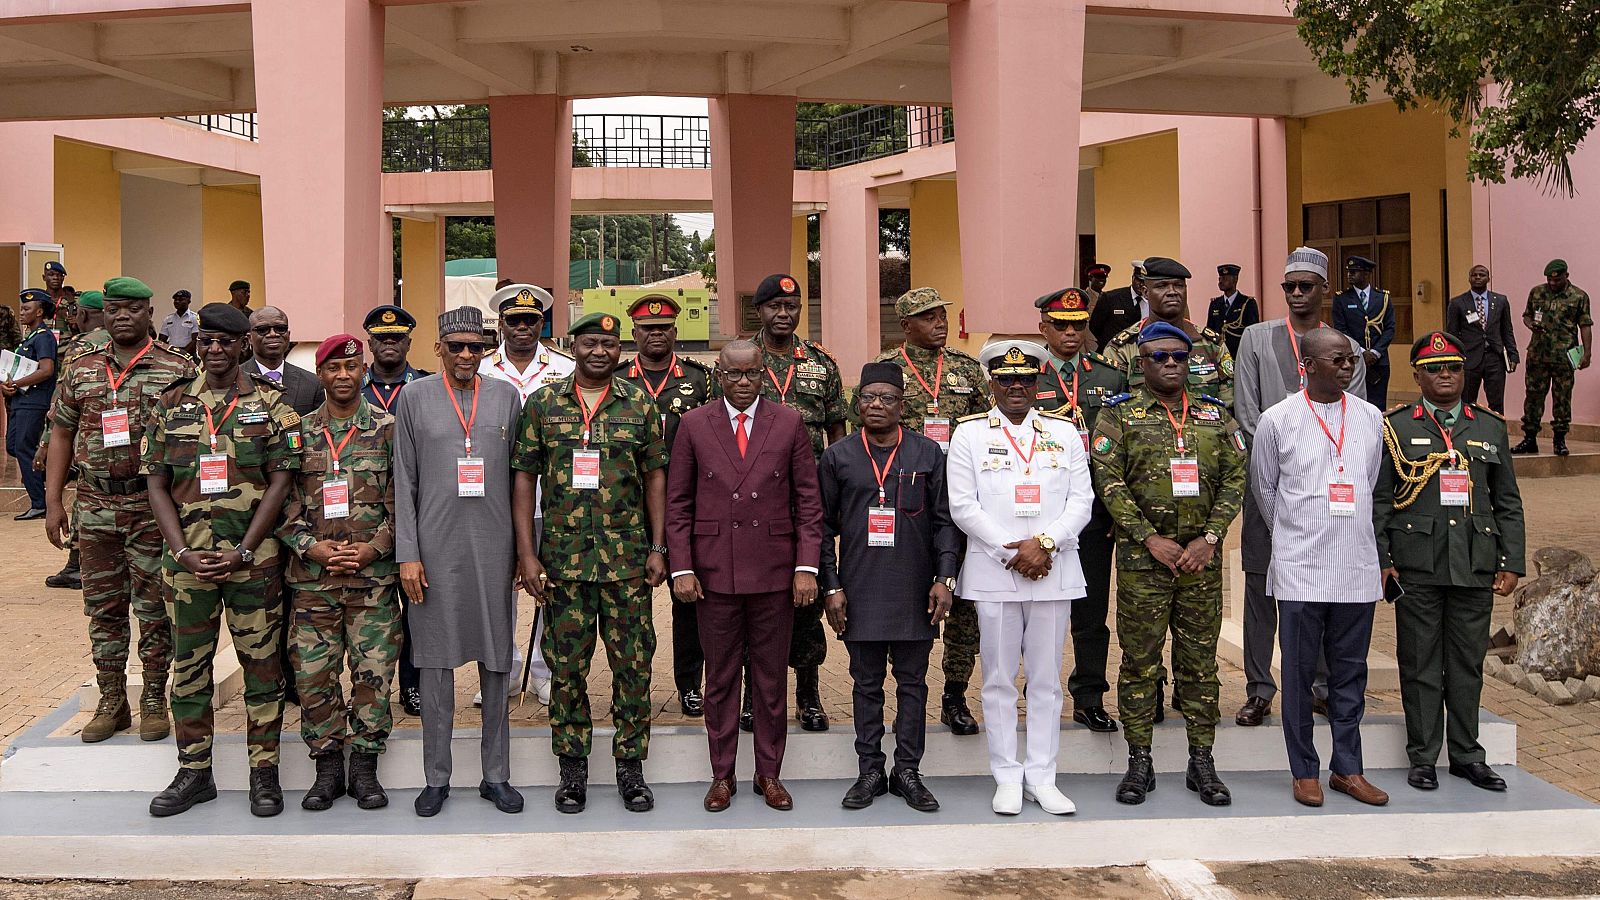 Los líderes de África occidental dicen estar preparados para una intervención militar en Níger "si se da la orden"